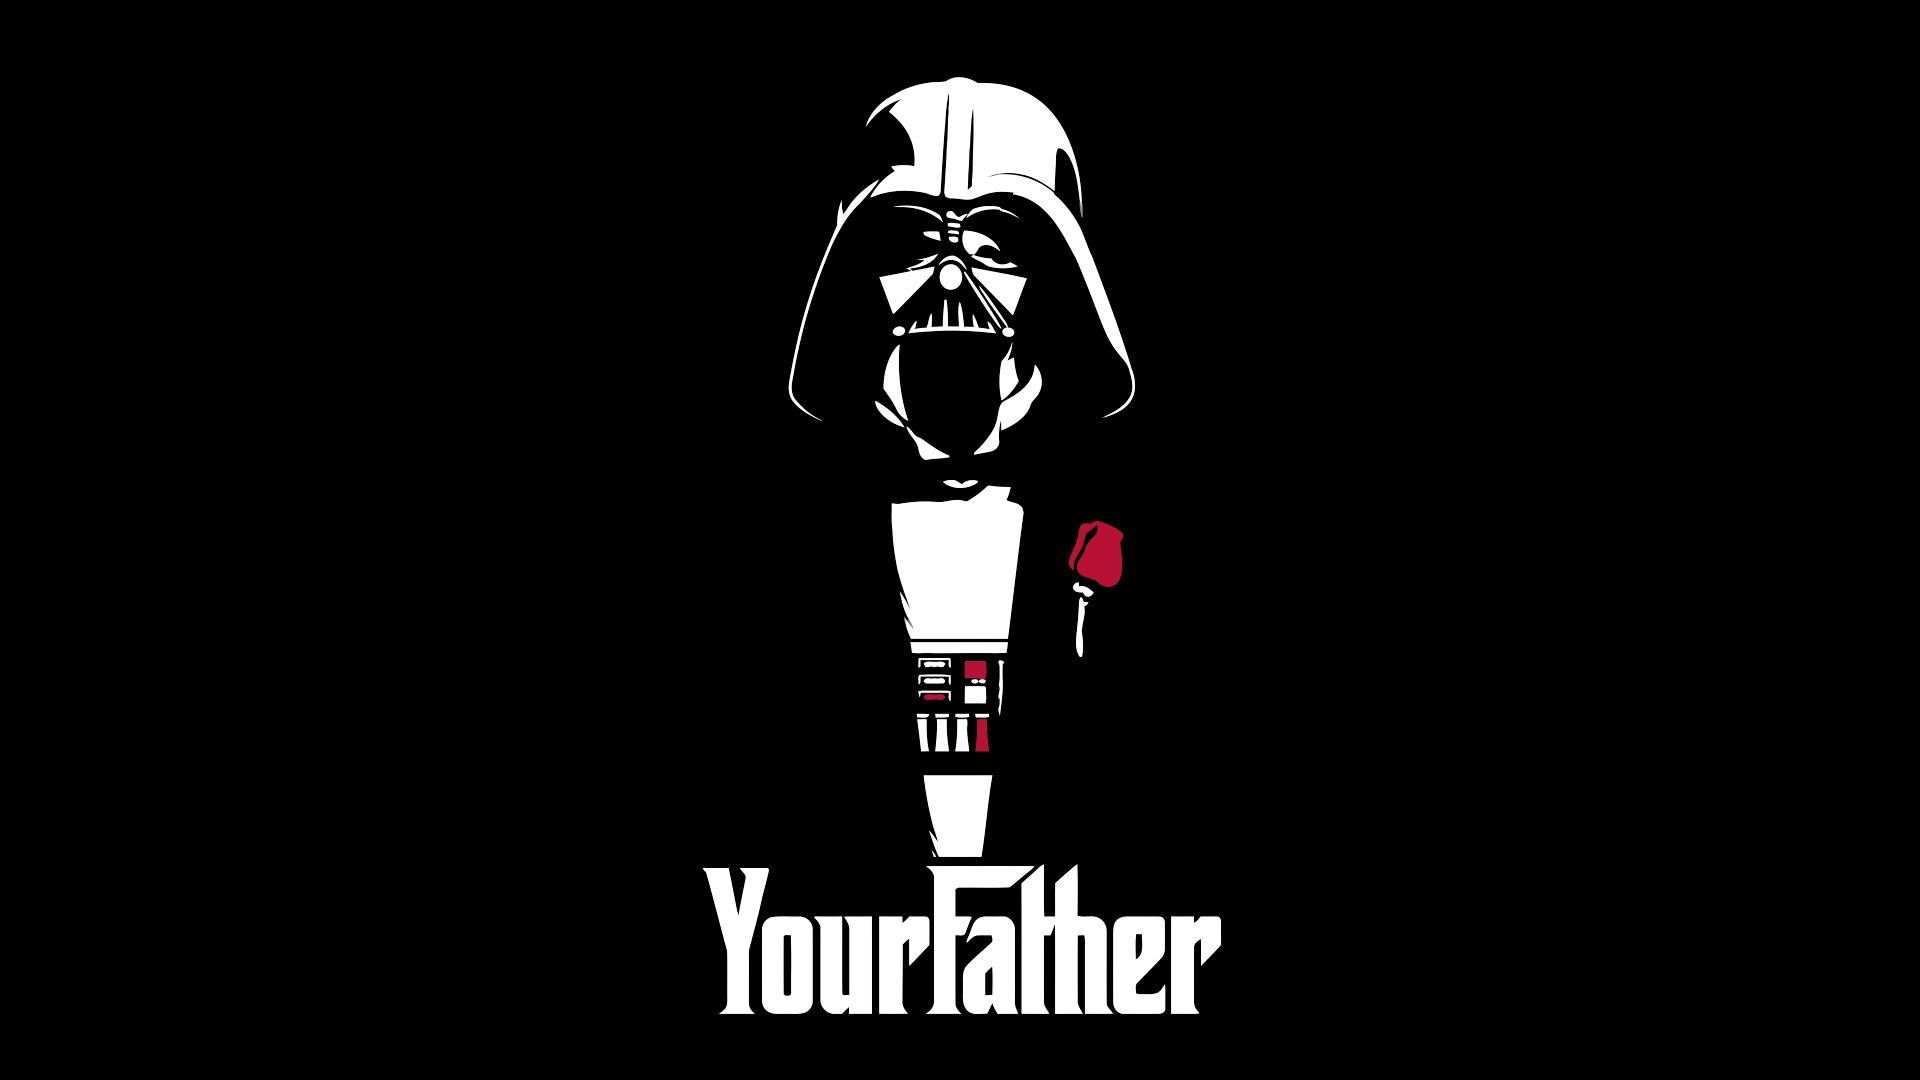 Sons of Darth Vader